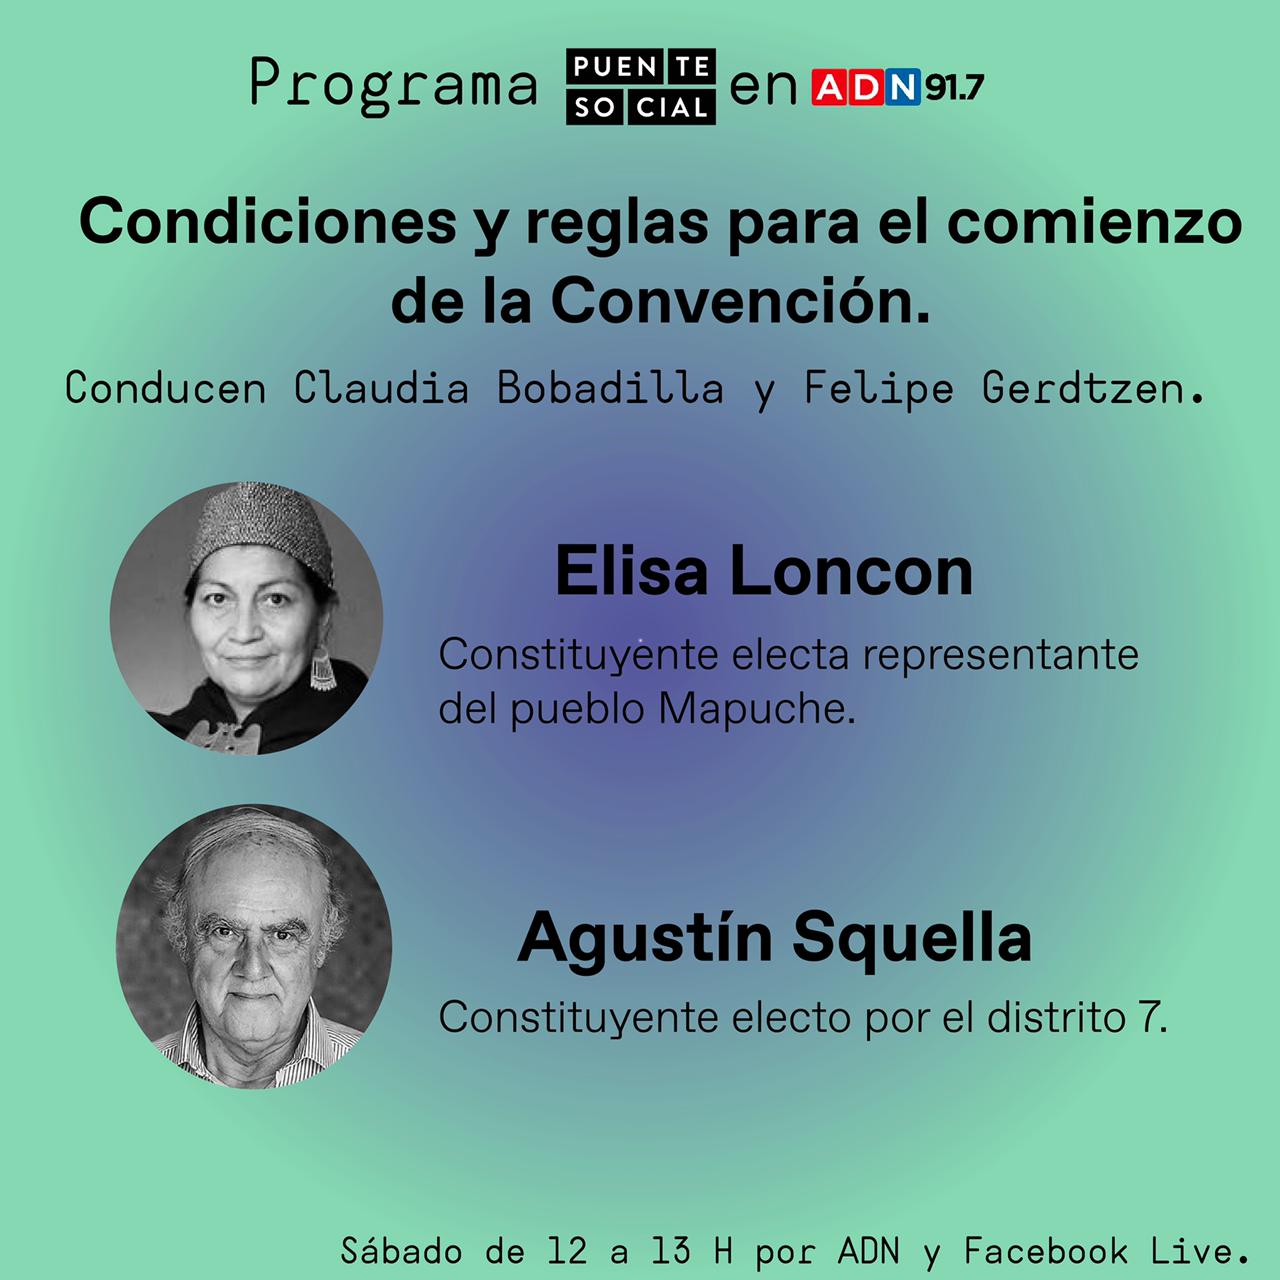 Podcast Puente Social de ADN reúne a Elisa Loncón y Agustín Squella